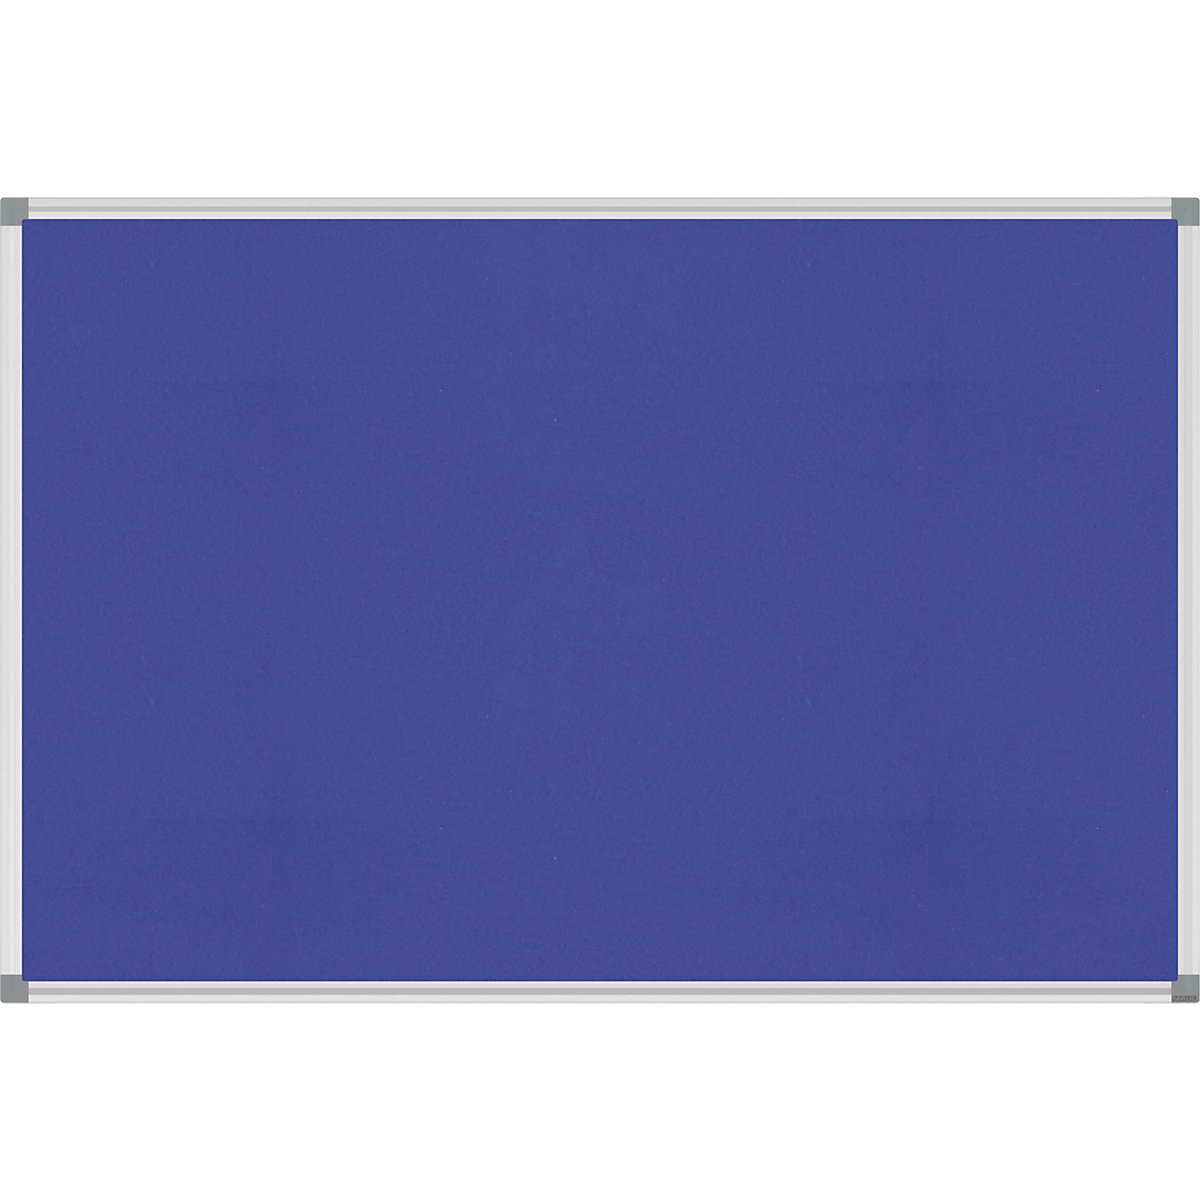 Nástěnka STANDARD – MAUL, plstěný potah, modrá, š x v 900 x 600 mm